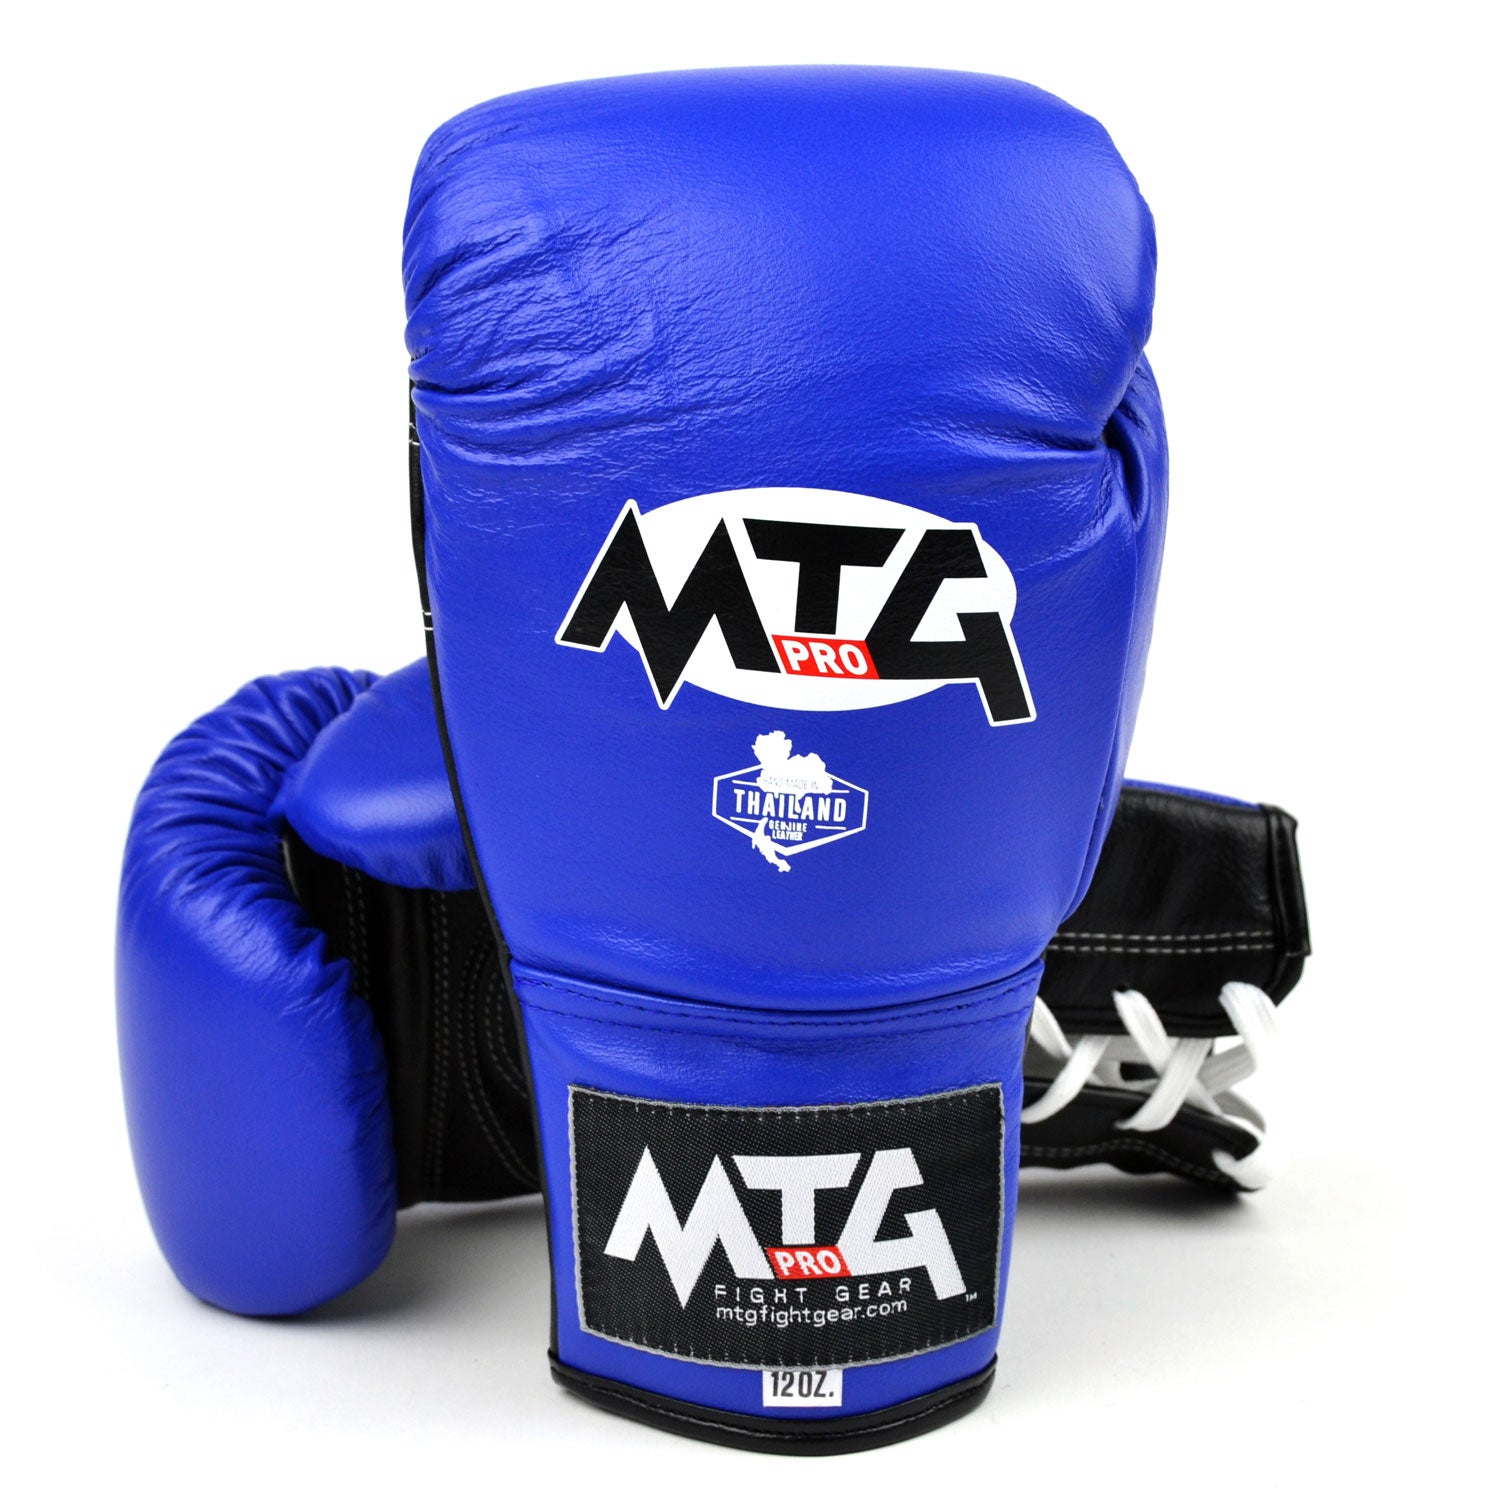 Image of LG2 MTG Pro 3-Tone Blue Lace-up Boxing Gloves